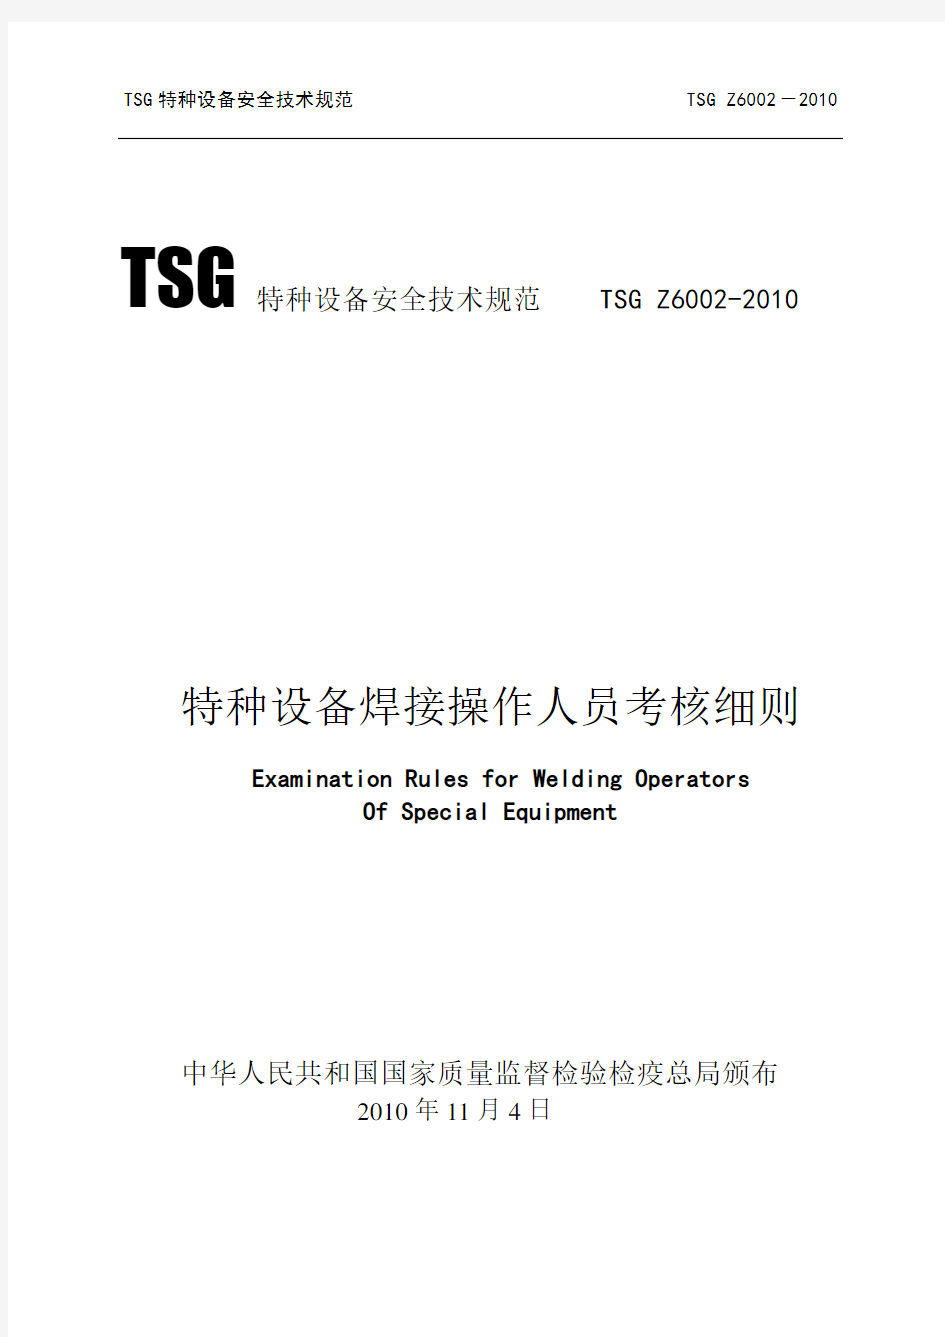 TSGZ6002-2010特种设备焊接操作人员考核细则